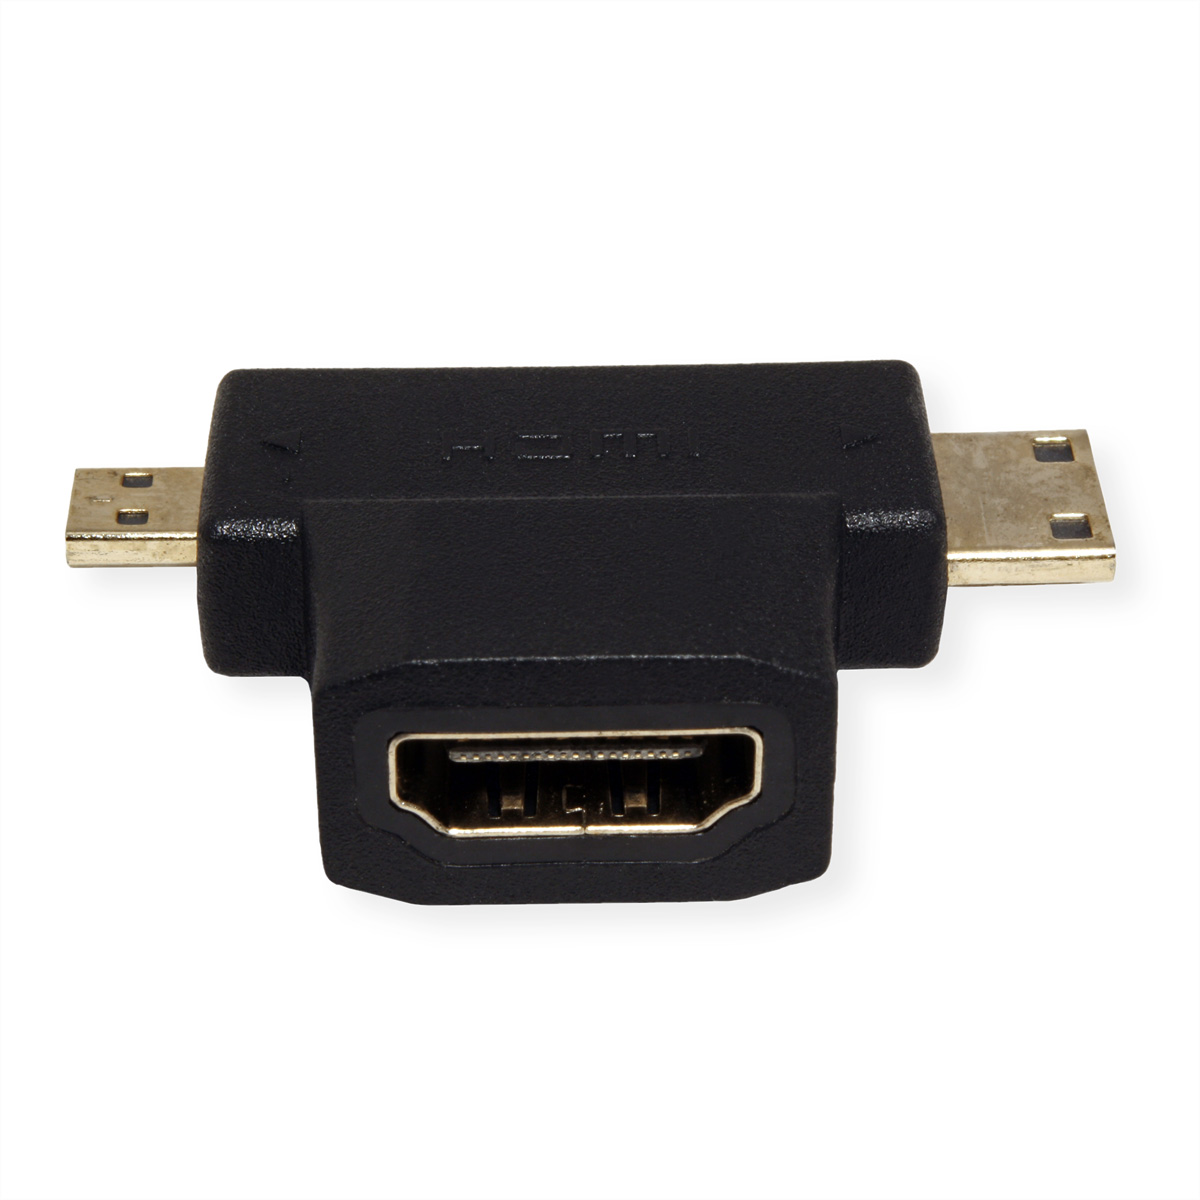 T-Adapter Adapter VALUE HDMI Mini + HDMI HDMI - HDMI Micro HDMI-HDMI